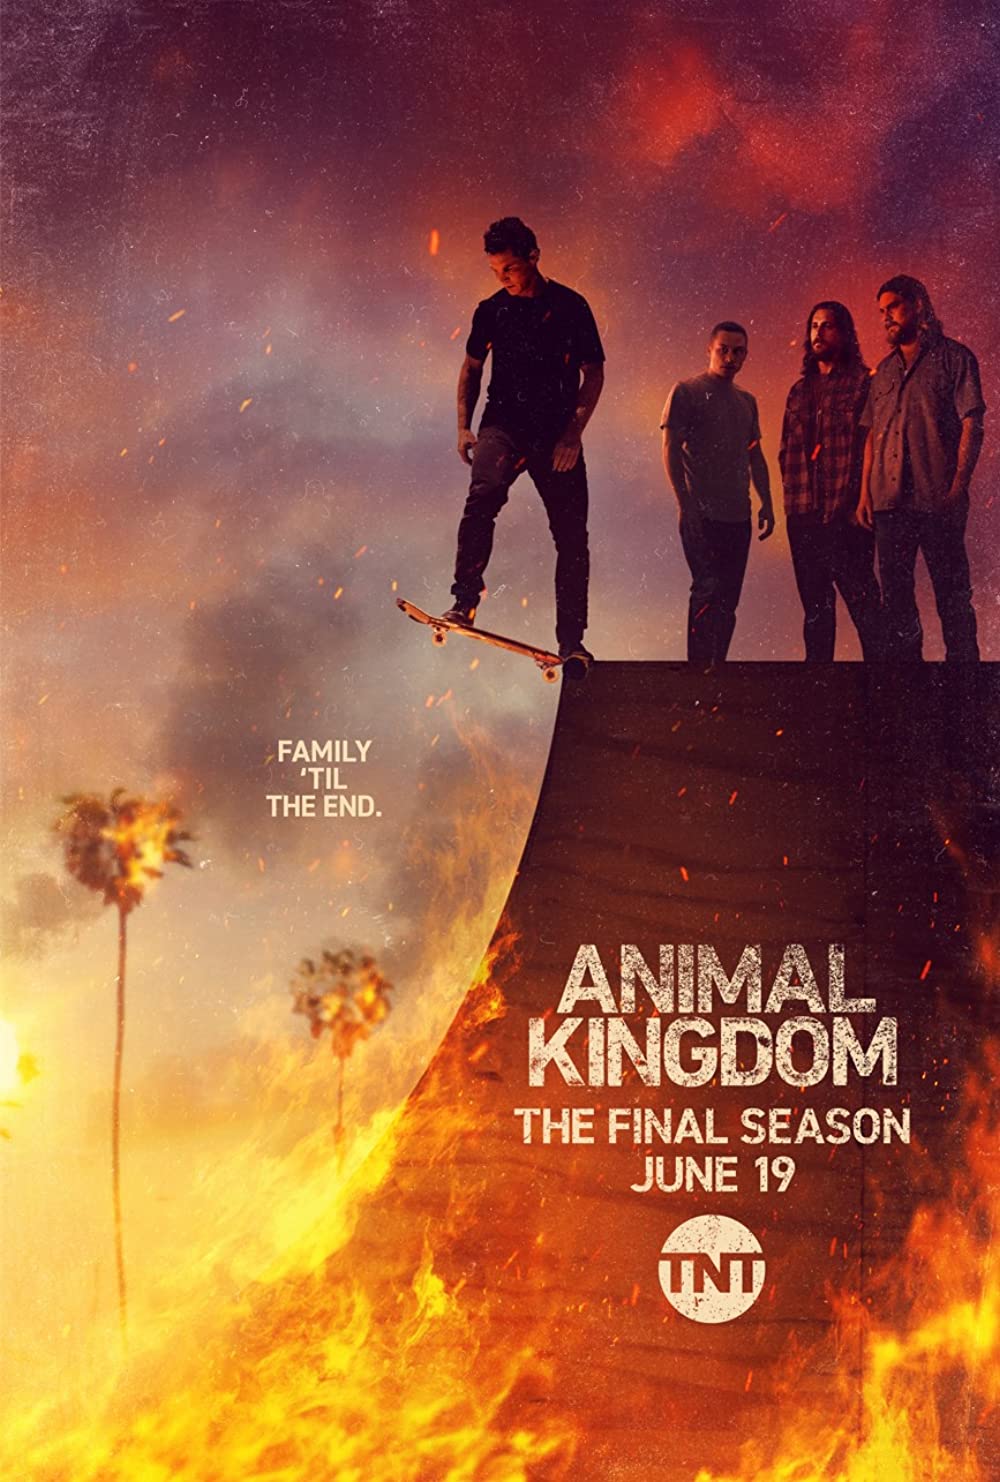 ดูหนังออนไลน์ Animal Kingdom Season 1 EP.9 แอนนิเมิล คิงด้อม ซีซั่น 1 ตอนที่ 9 (ซับไทย)